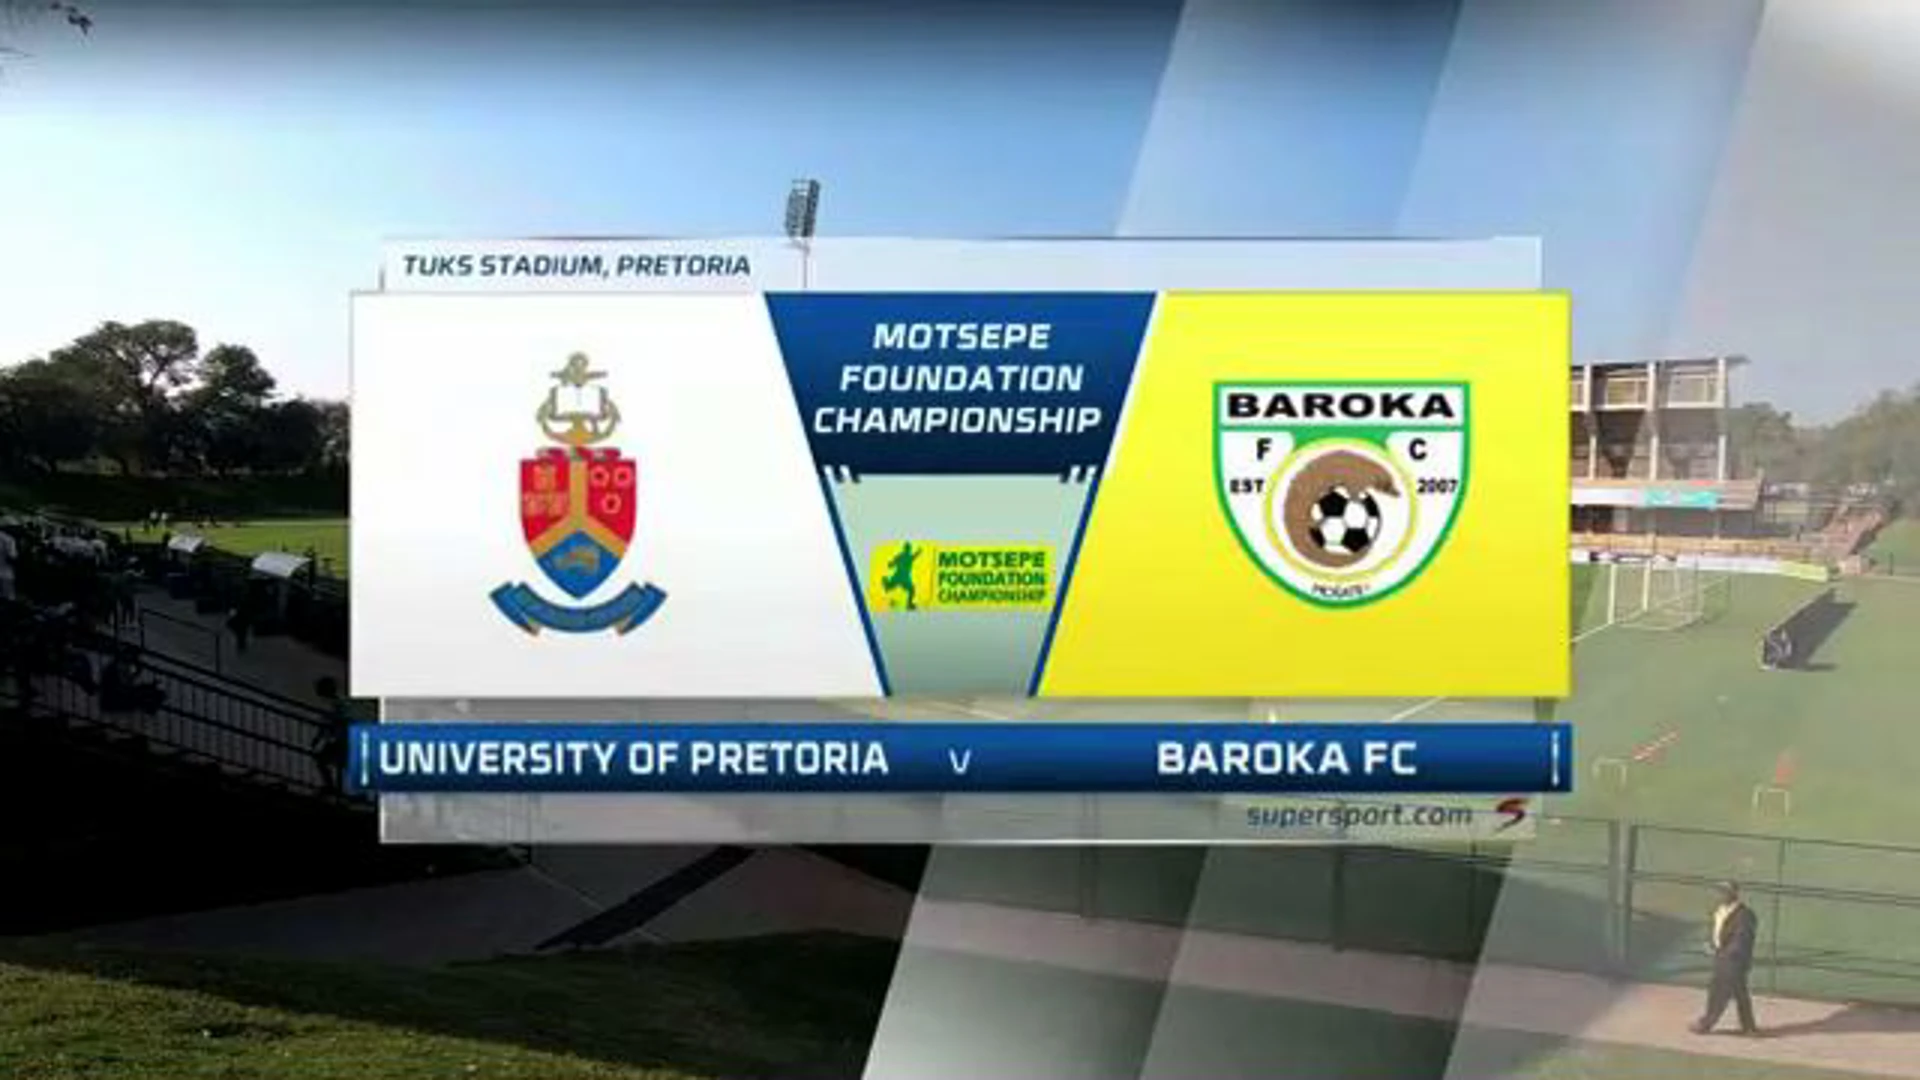 University of Pretoria v Baroka | Match Highlights | Motsepe Foundation Championship